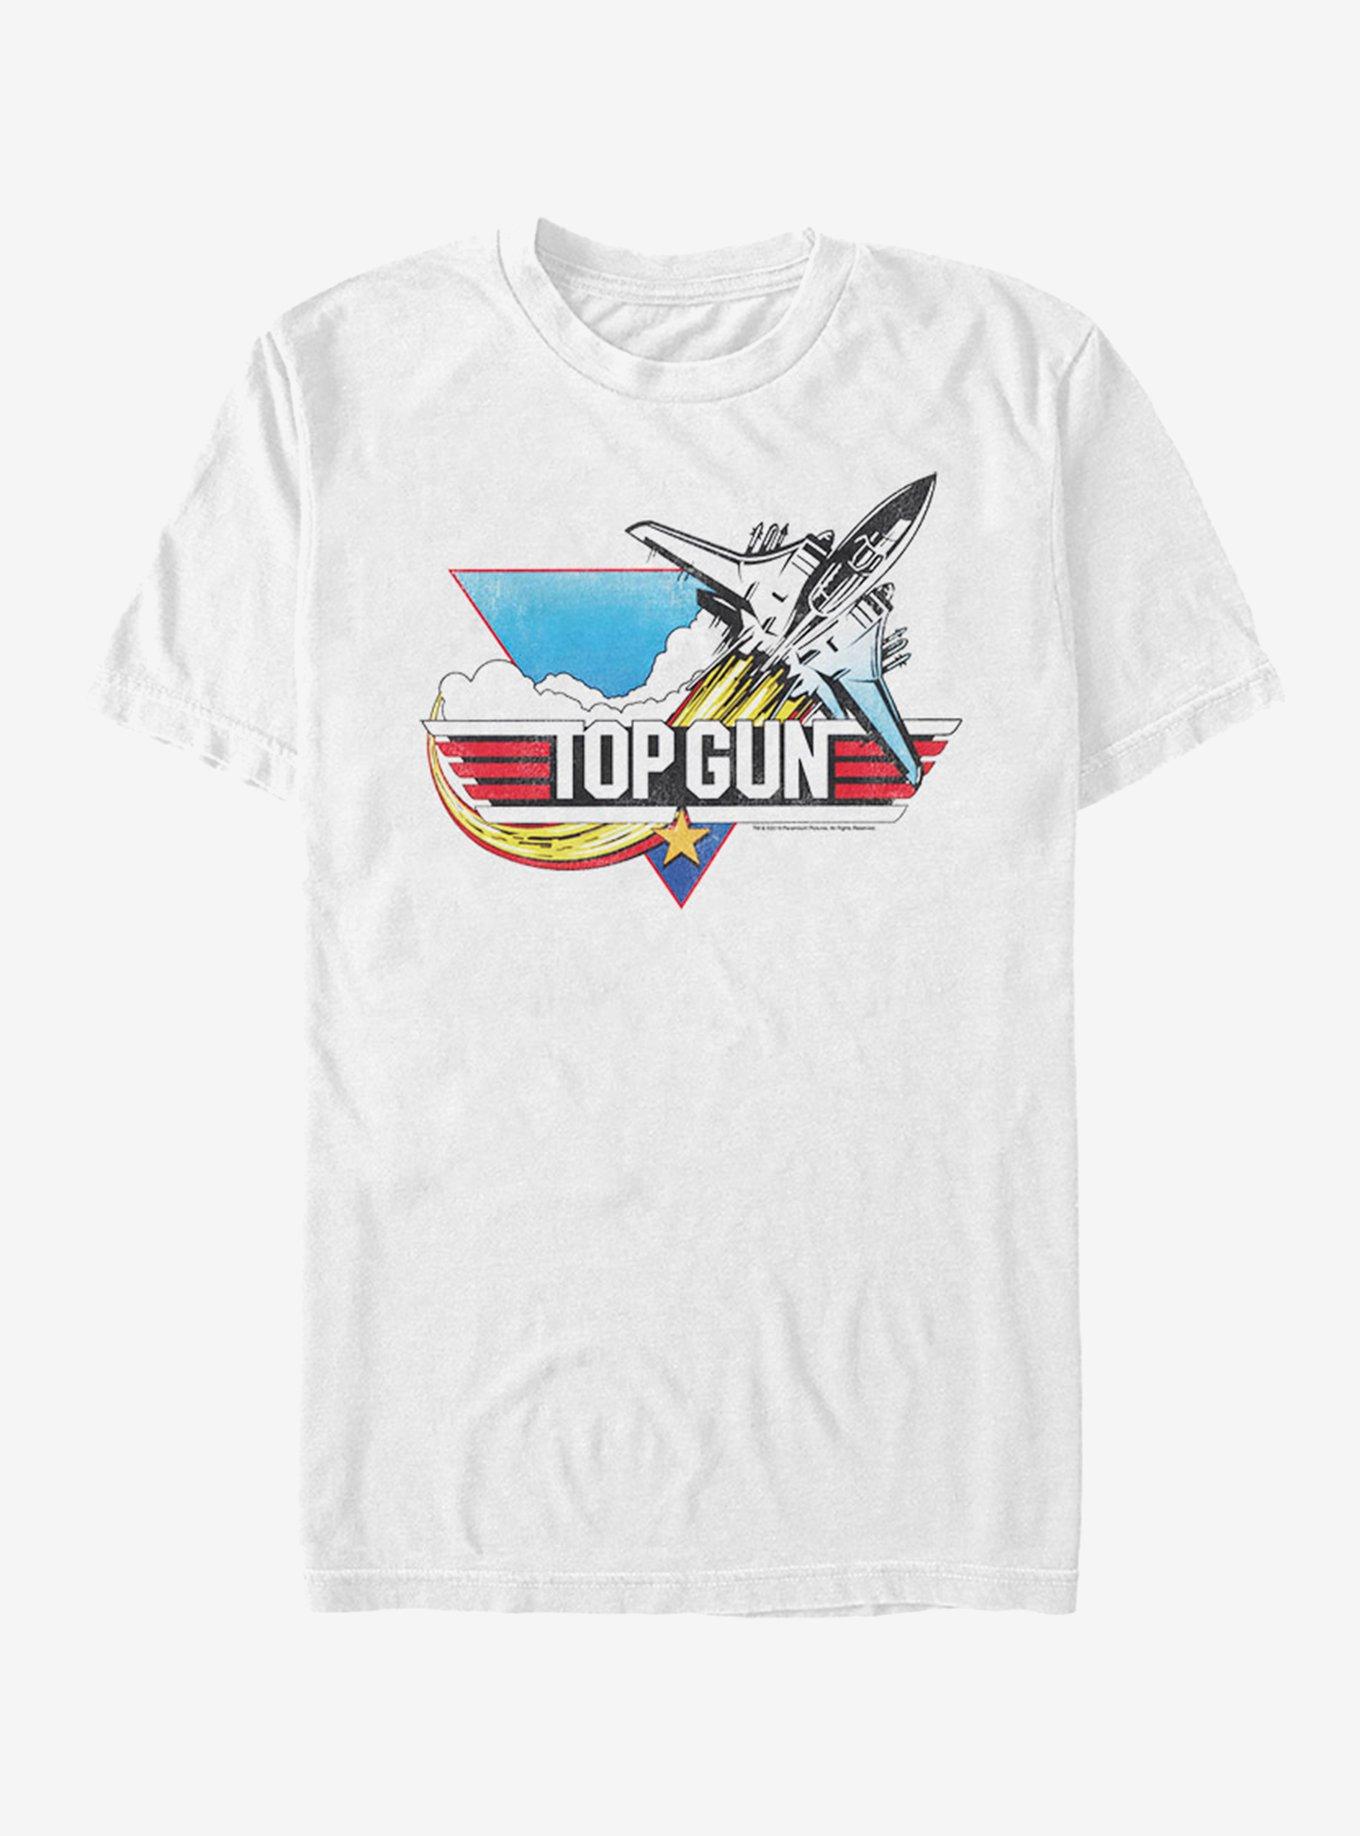 Top Gun Poster T-Shirt